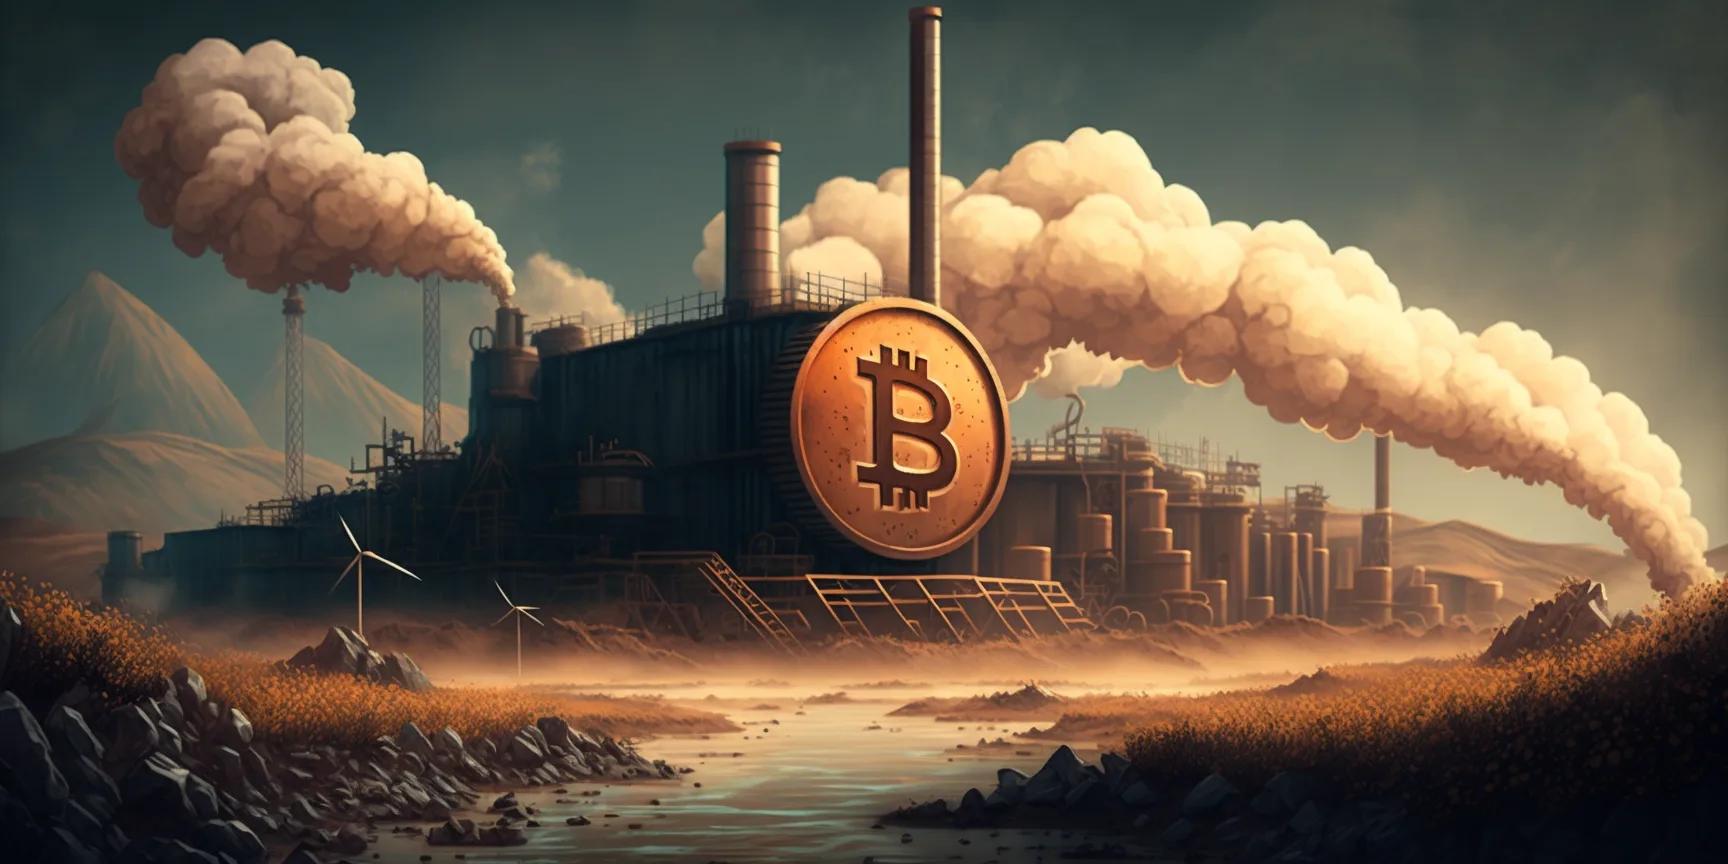 Bitcoin mining site polluting air